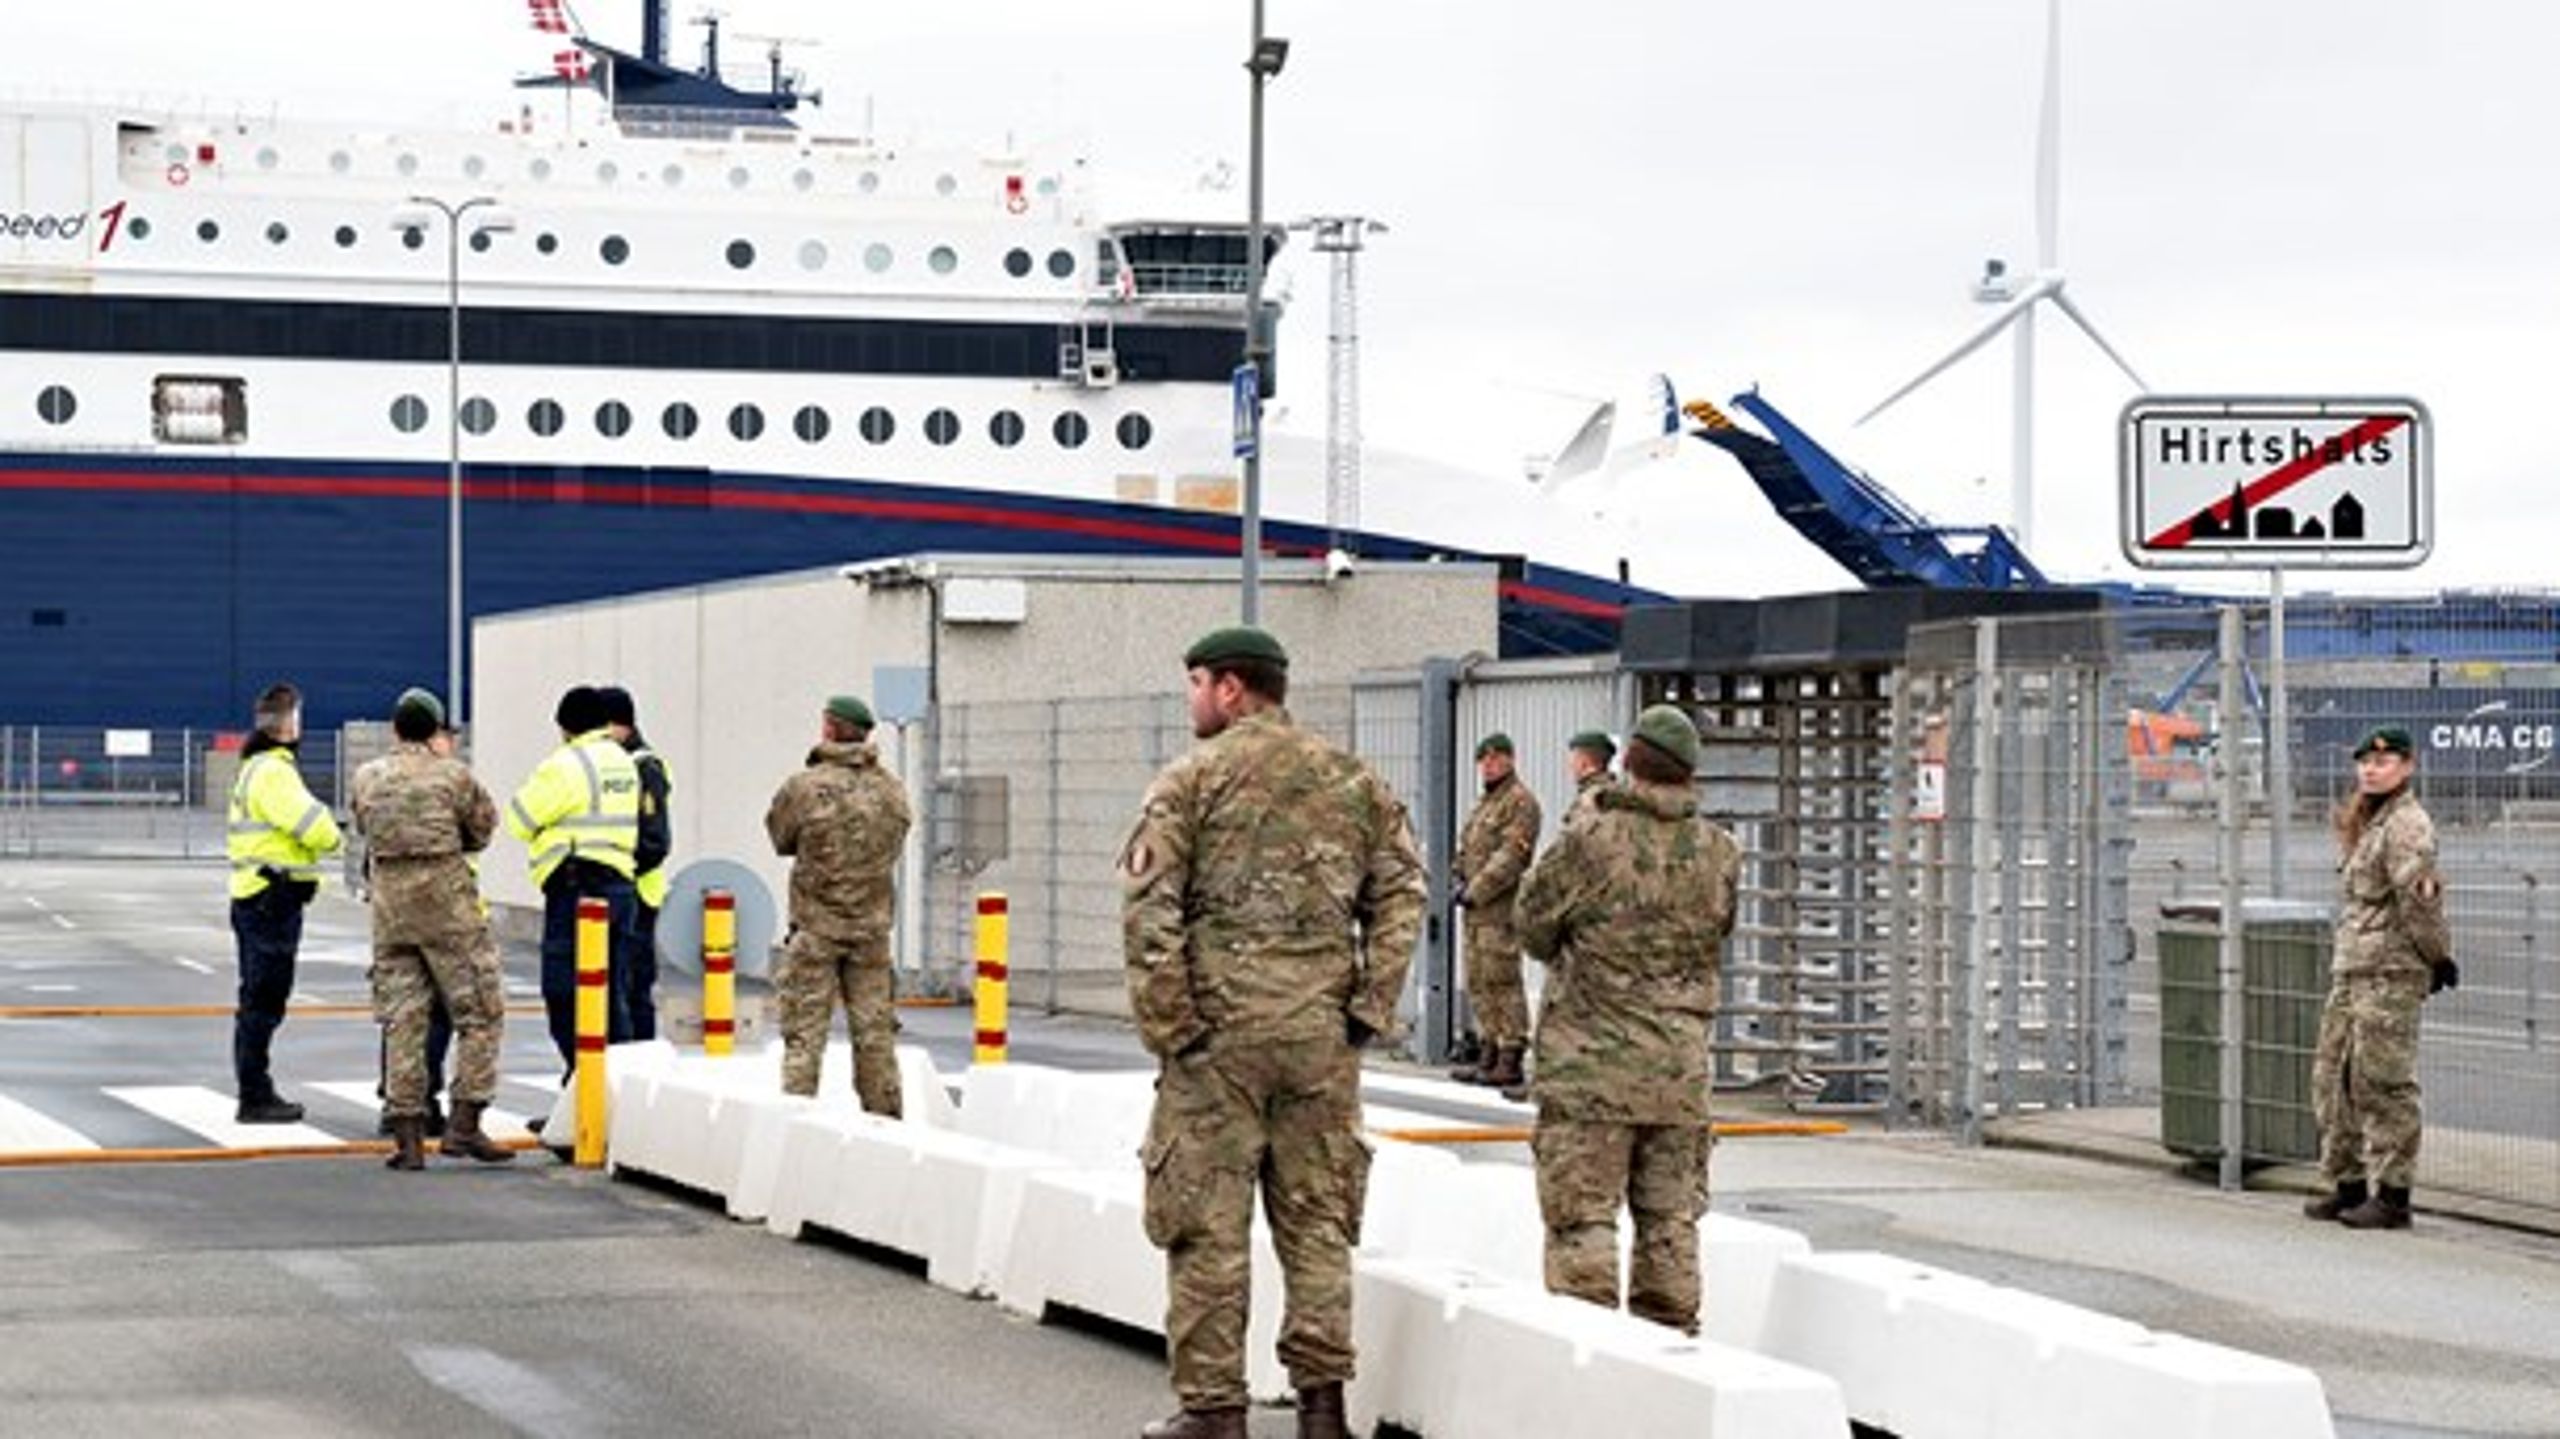 Forbuddet mod indrejse, som flere EU-lande, herunder Danmark, har indført, kommer i fokus i denne uge. Her er det kontrollerne ved Norges-færgen i Hirtshals søndag.